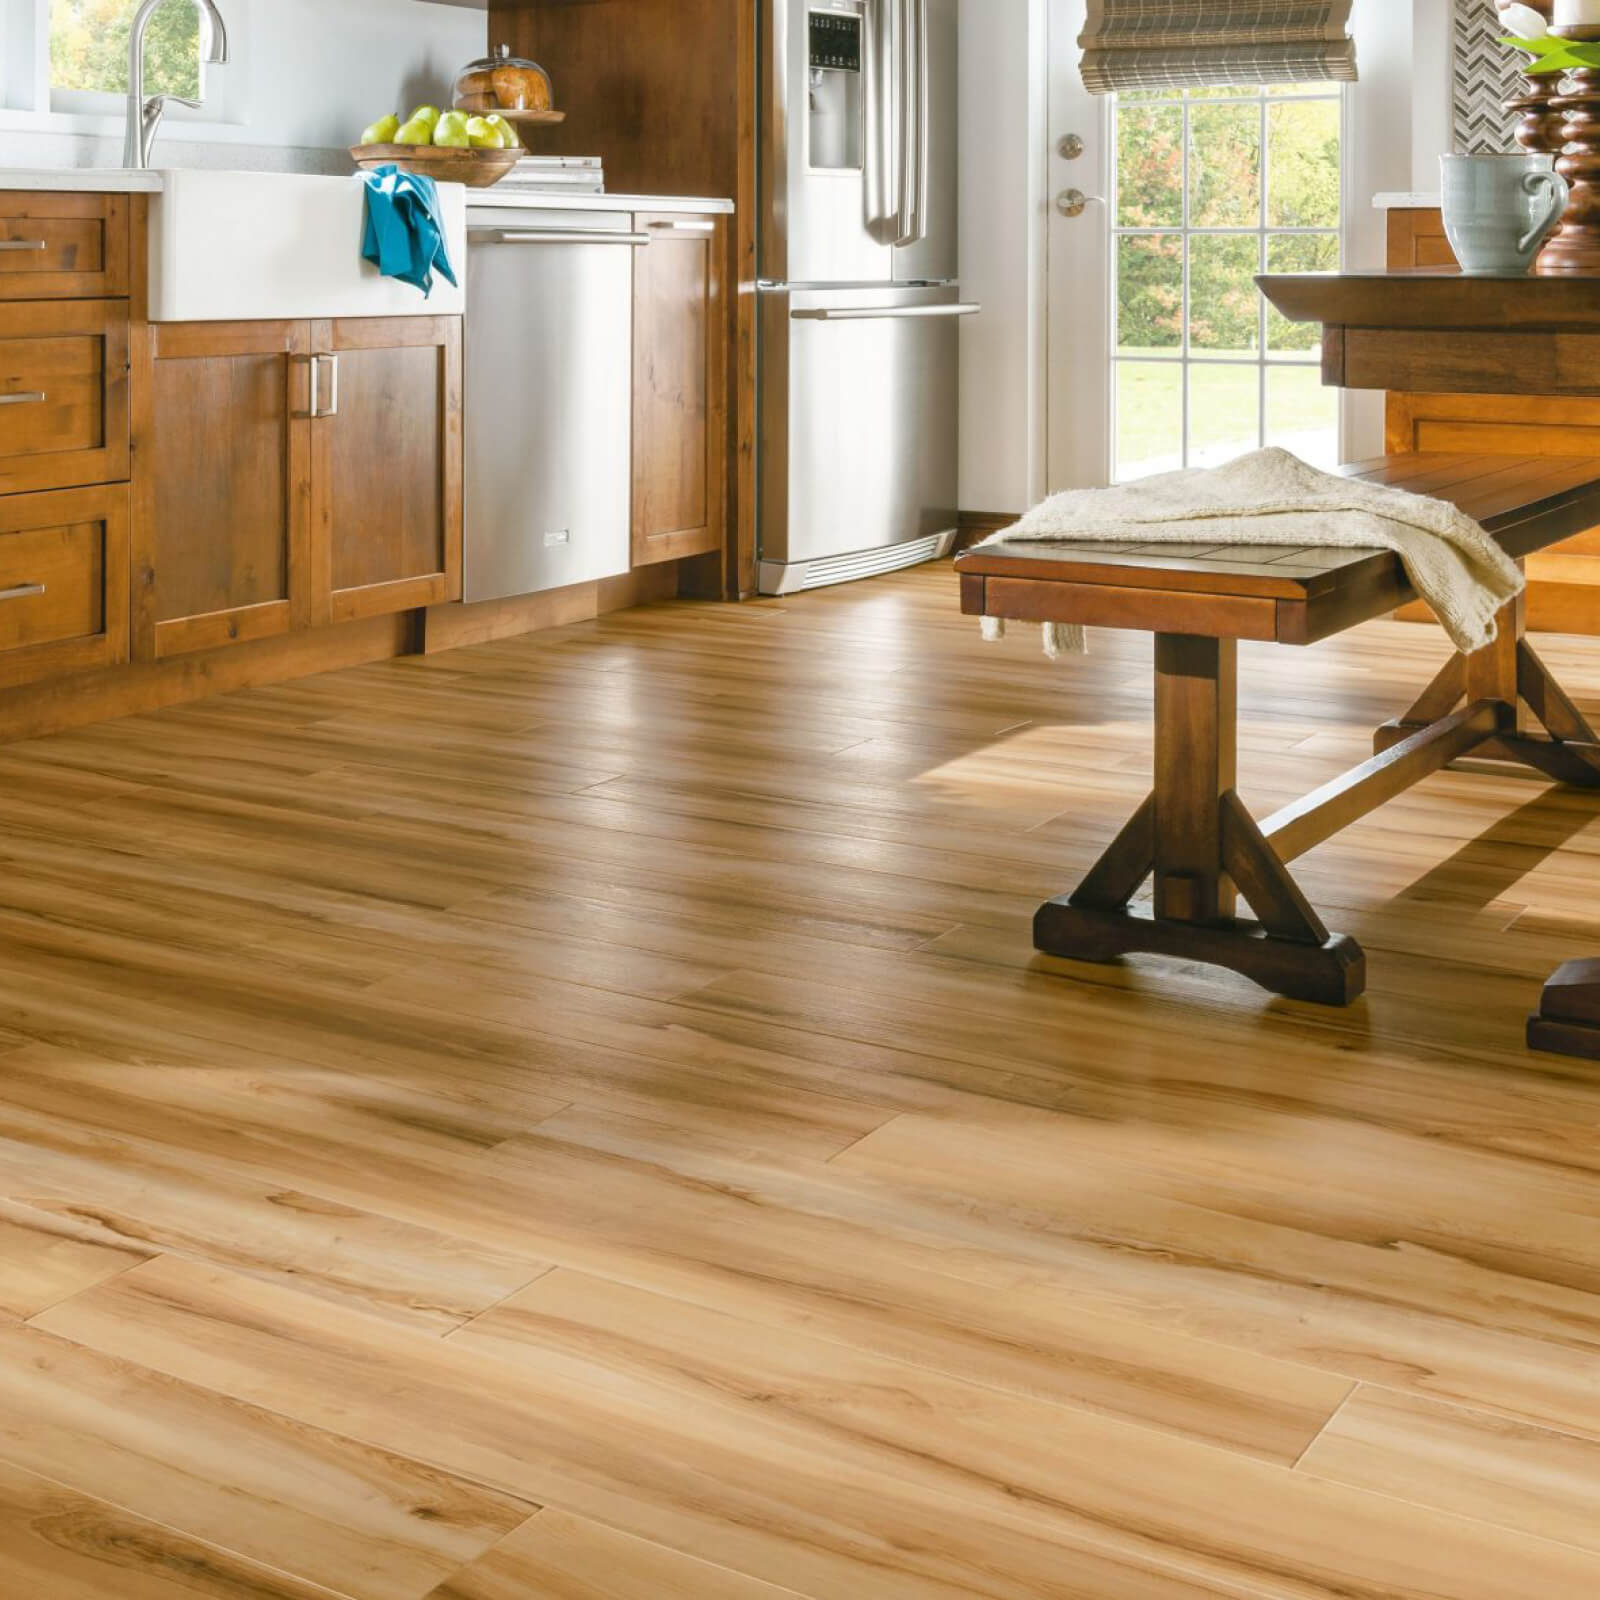 Luxury vinyl flooring in kitchen | Allied Flooring & Paint